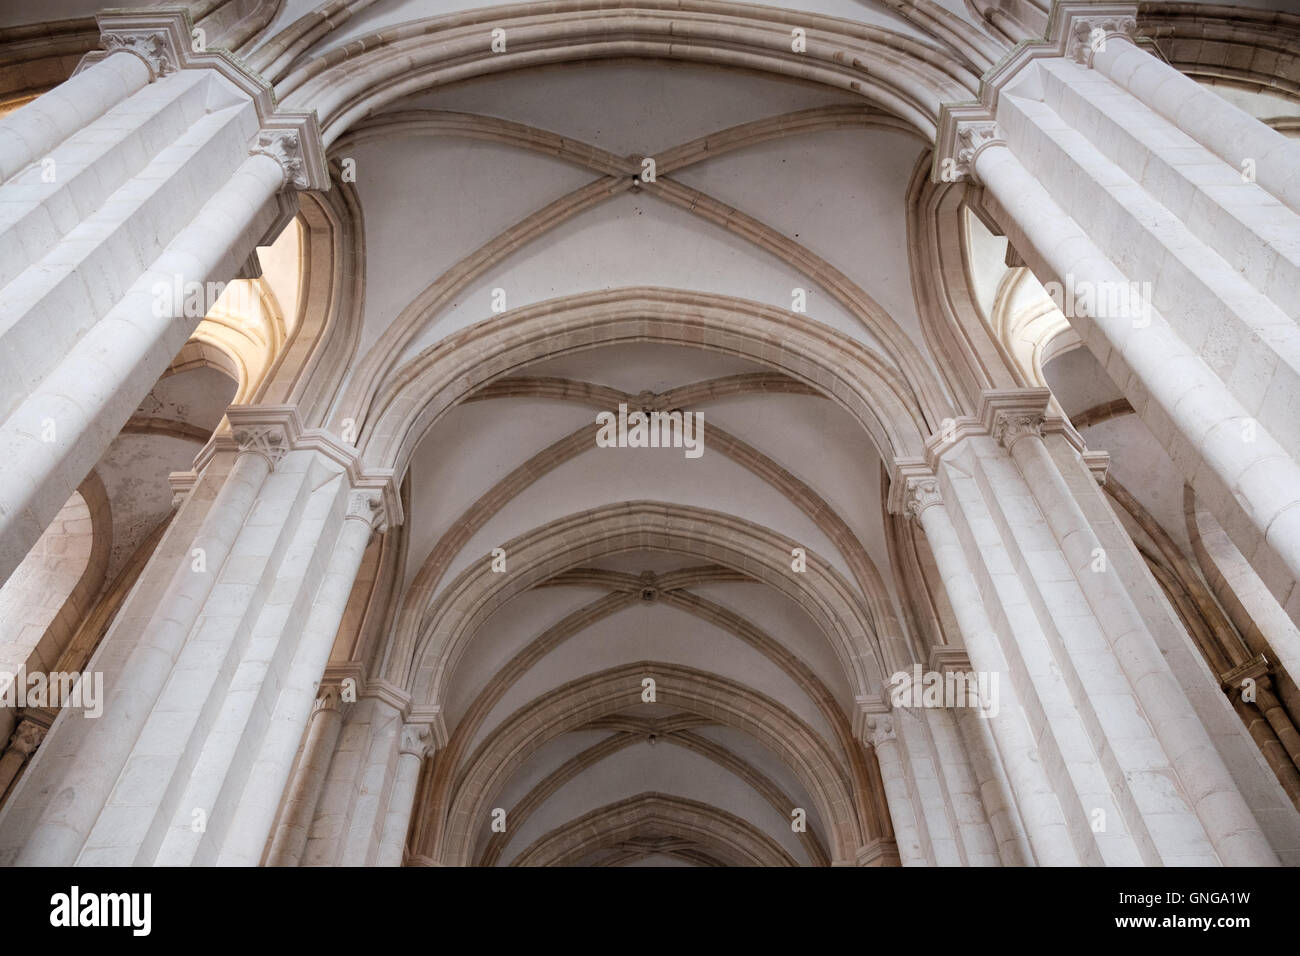 Les colonnes et toit voûté de l'église au monastère d'Alcobaça, Portugal Banque D'Images